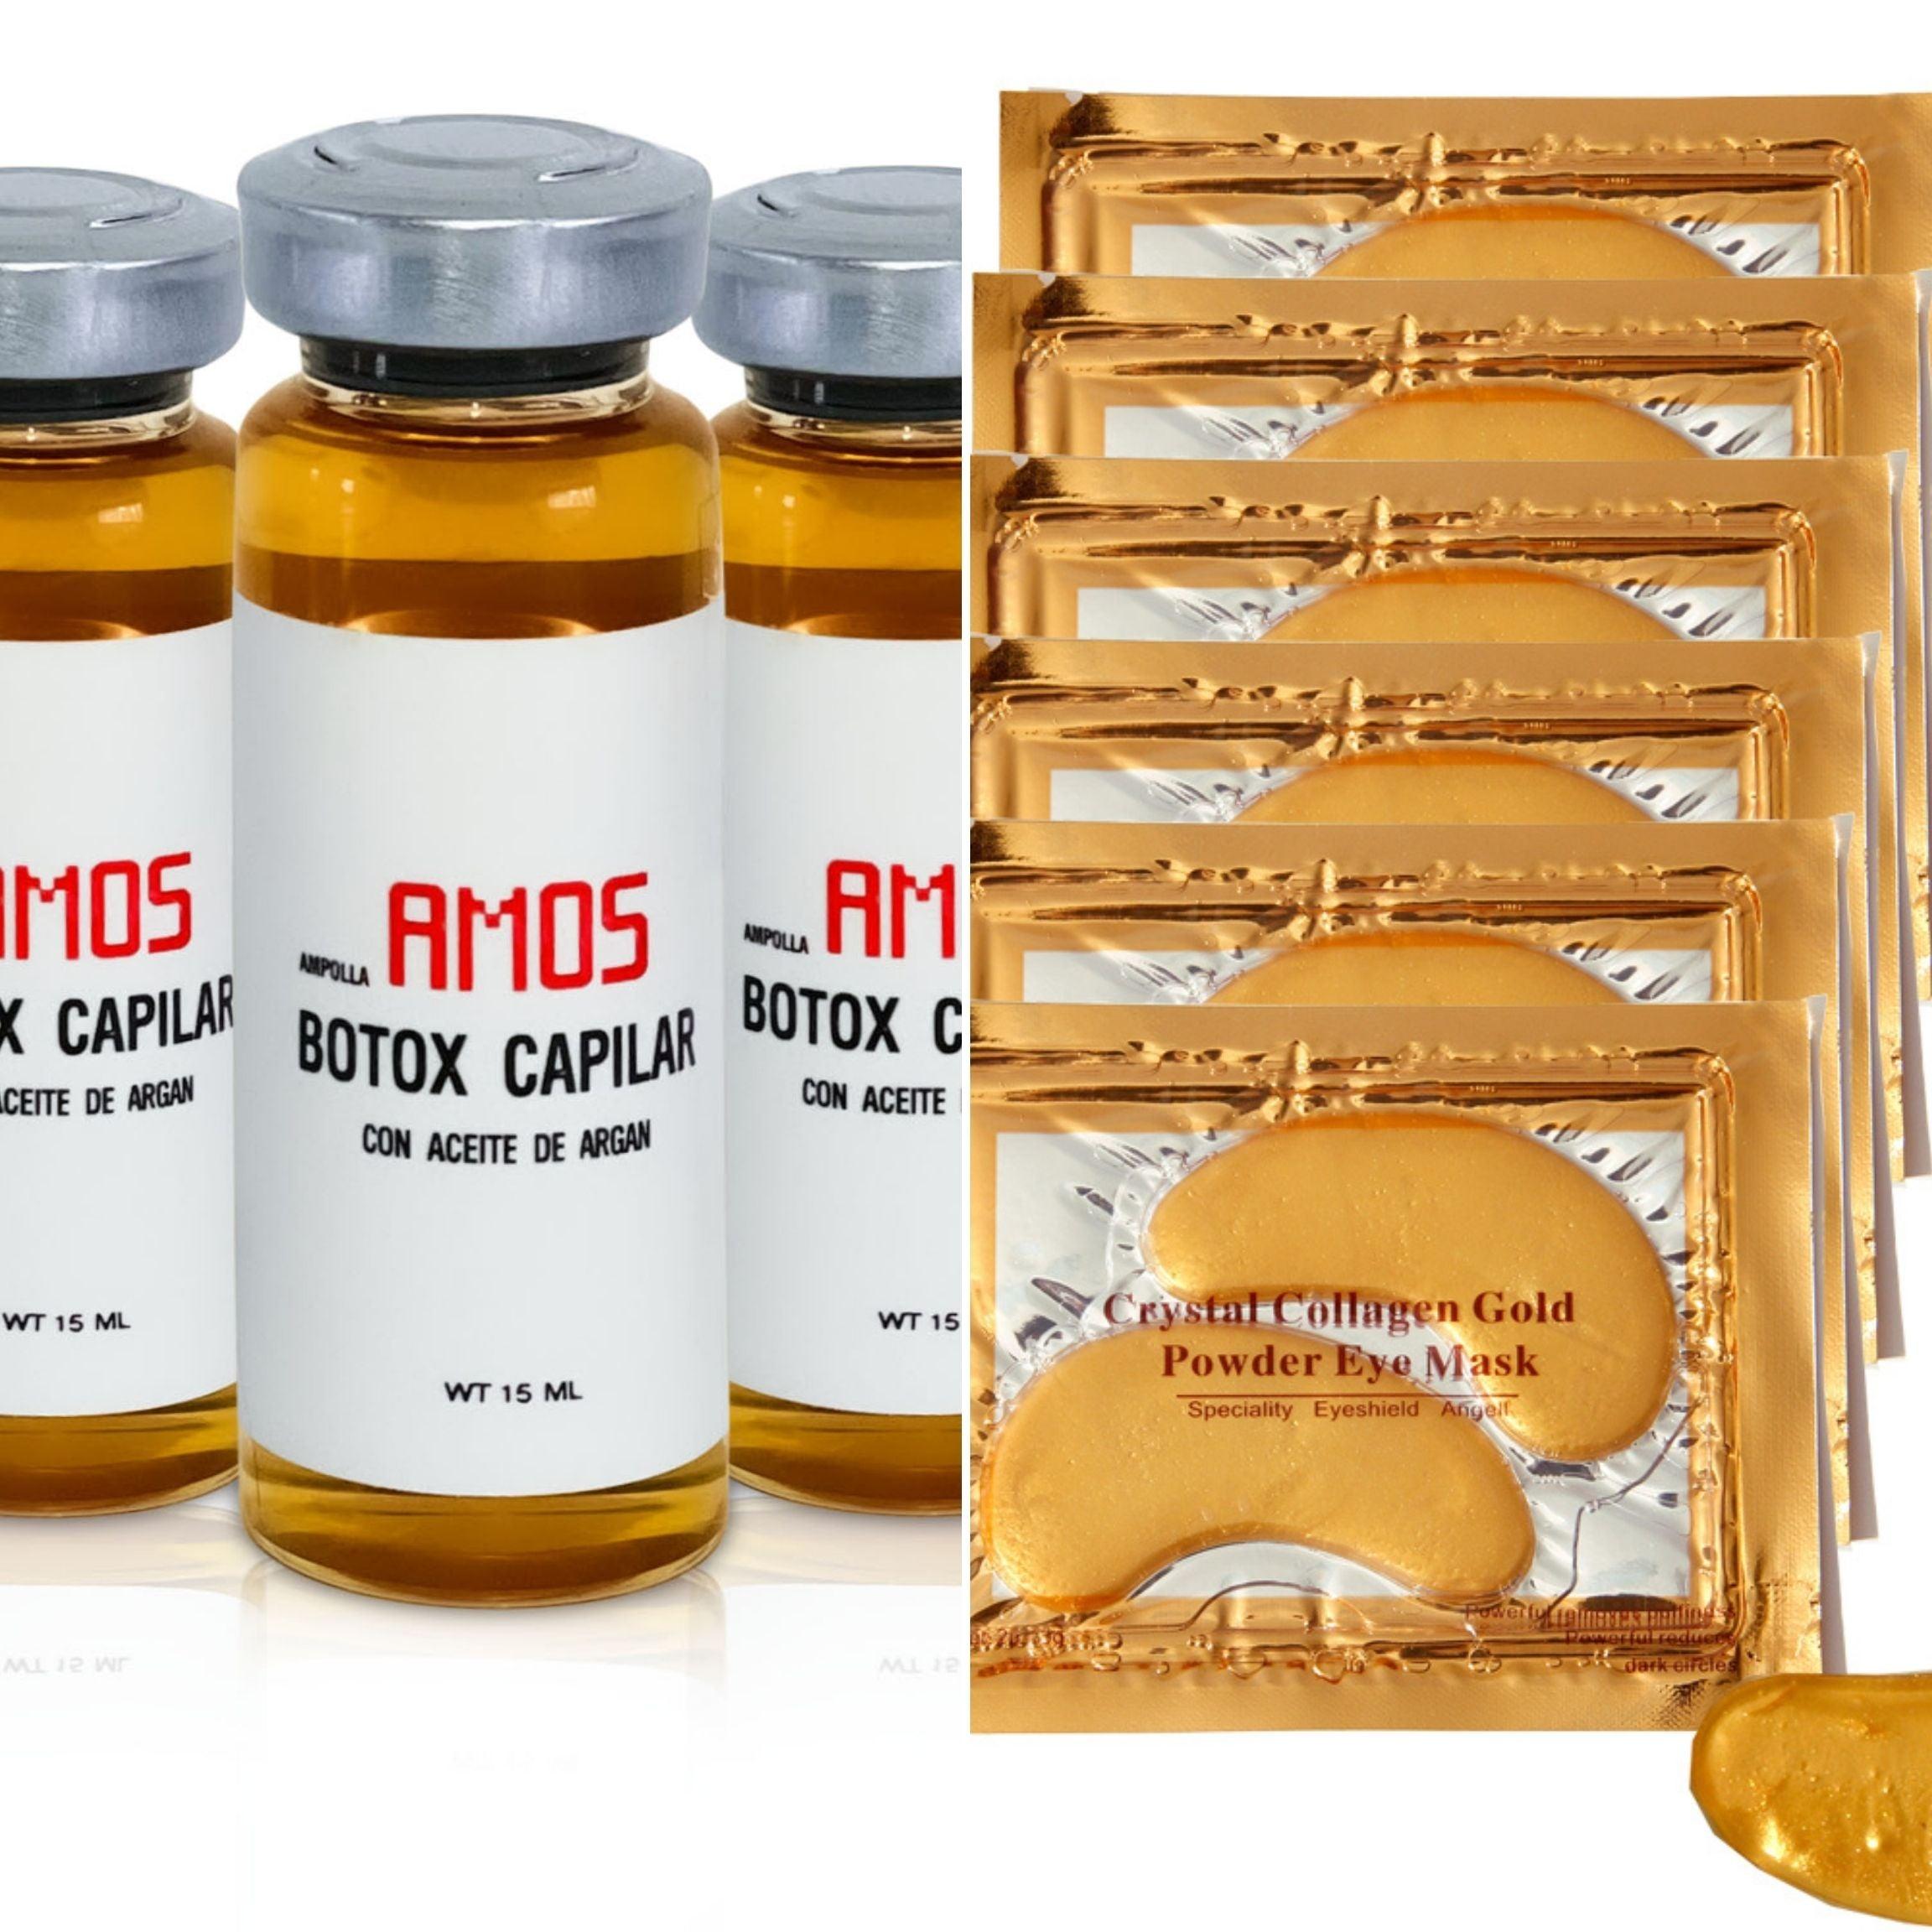 MOSTIMELINE Tratamiento Botox Capilar En Ampollas 3 Unidades De 15ml+Oro 24K Mascarillas Para Ojeras Y Bolsas (6 Pares)